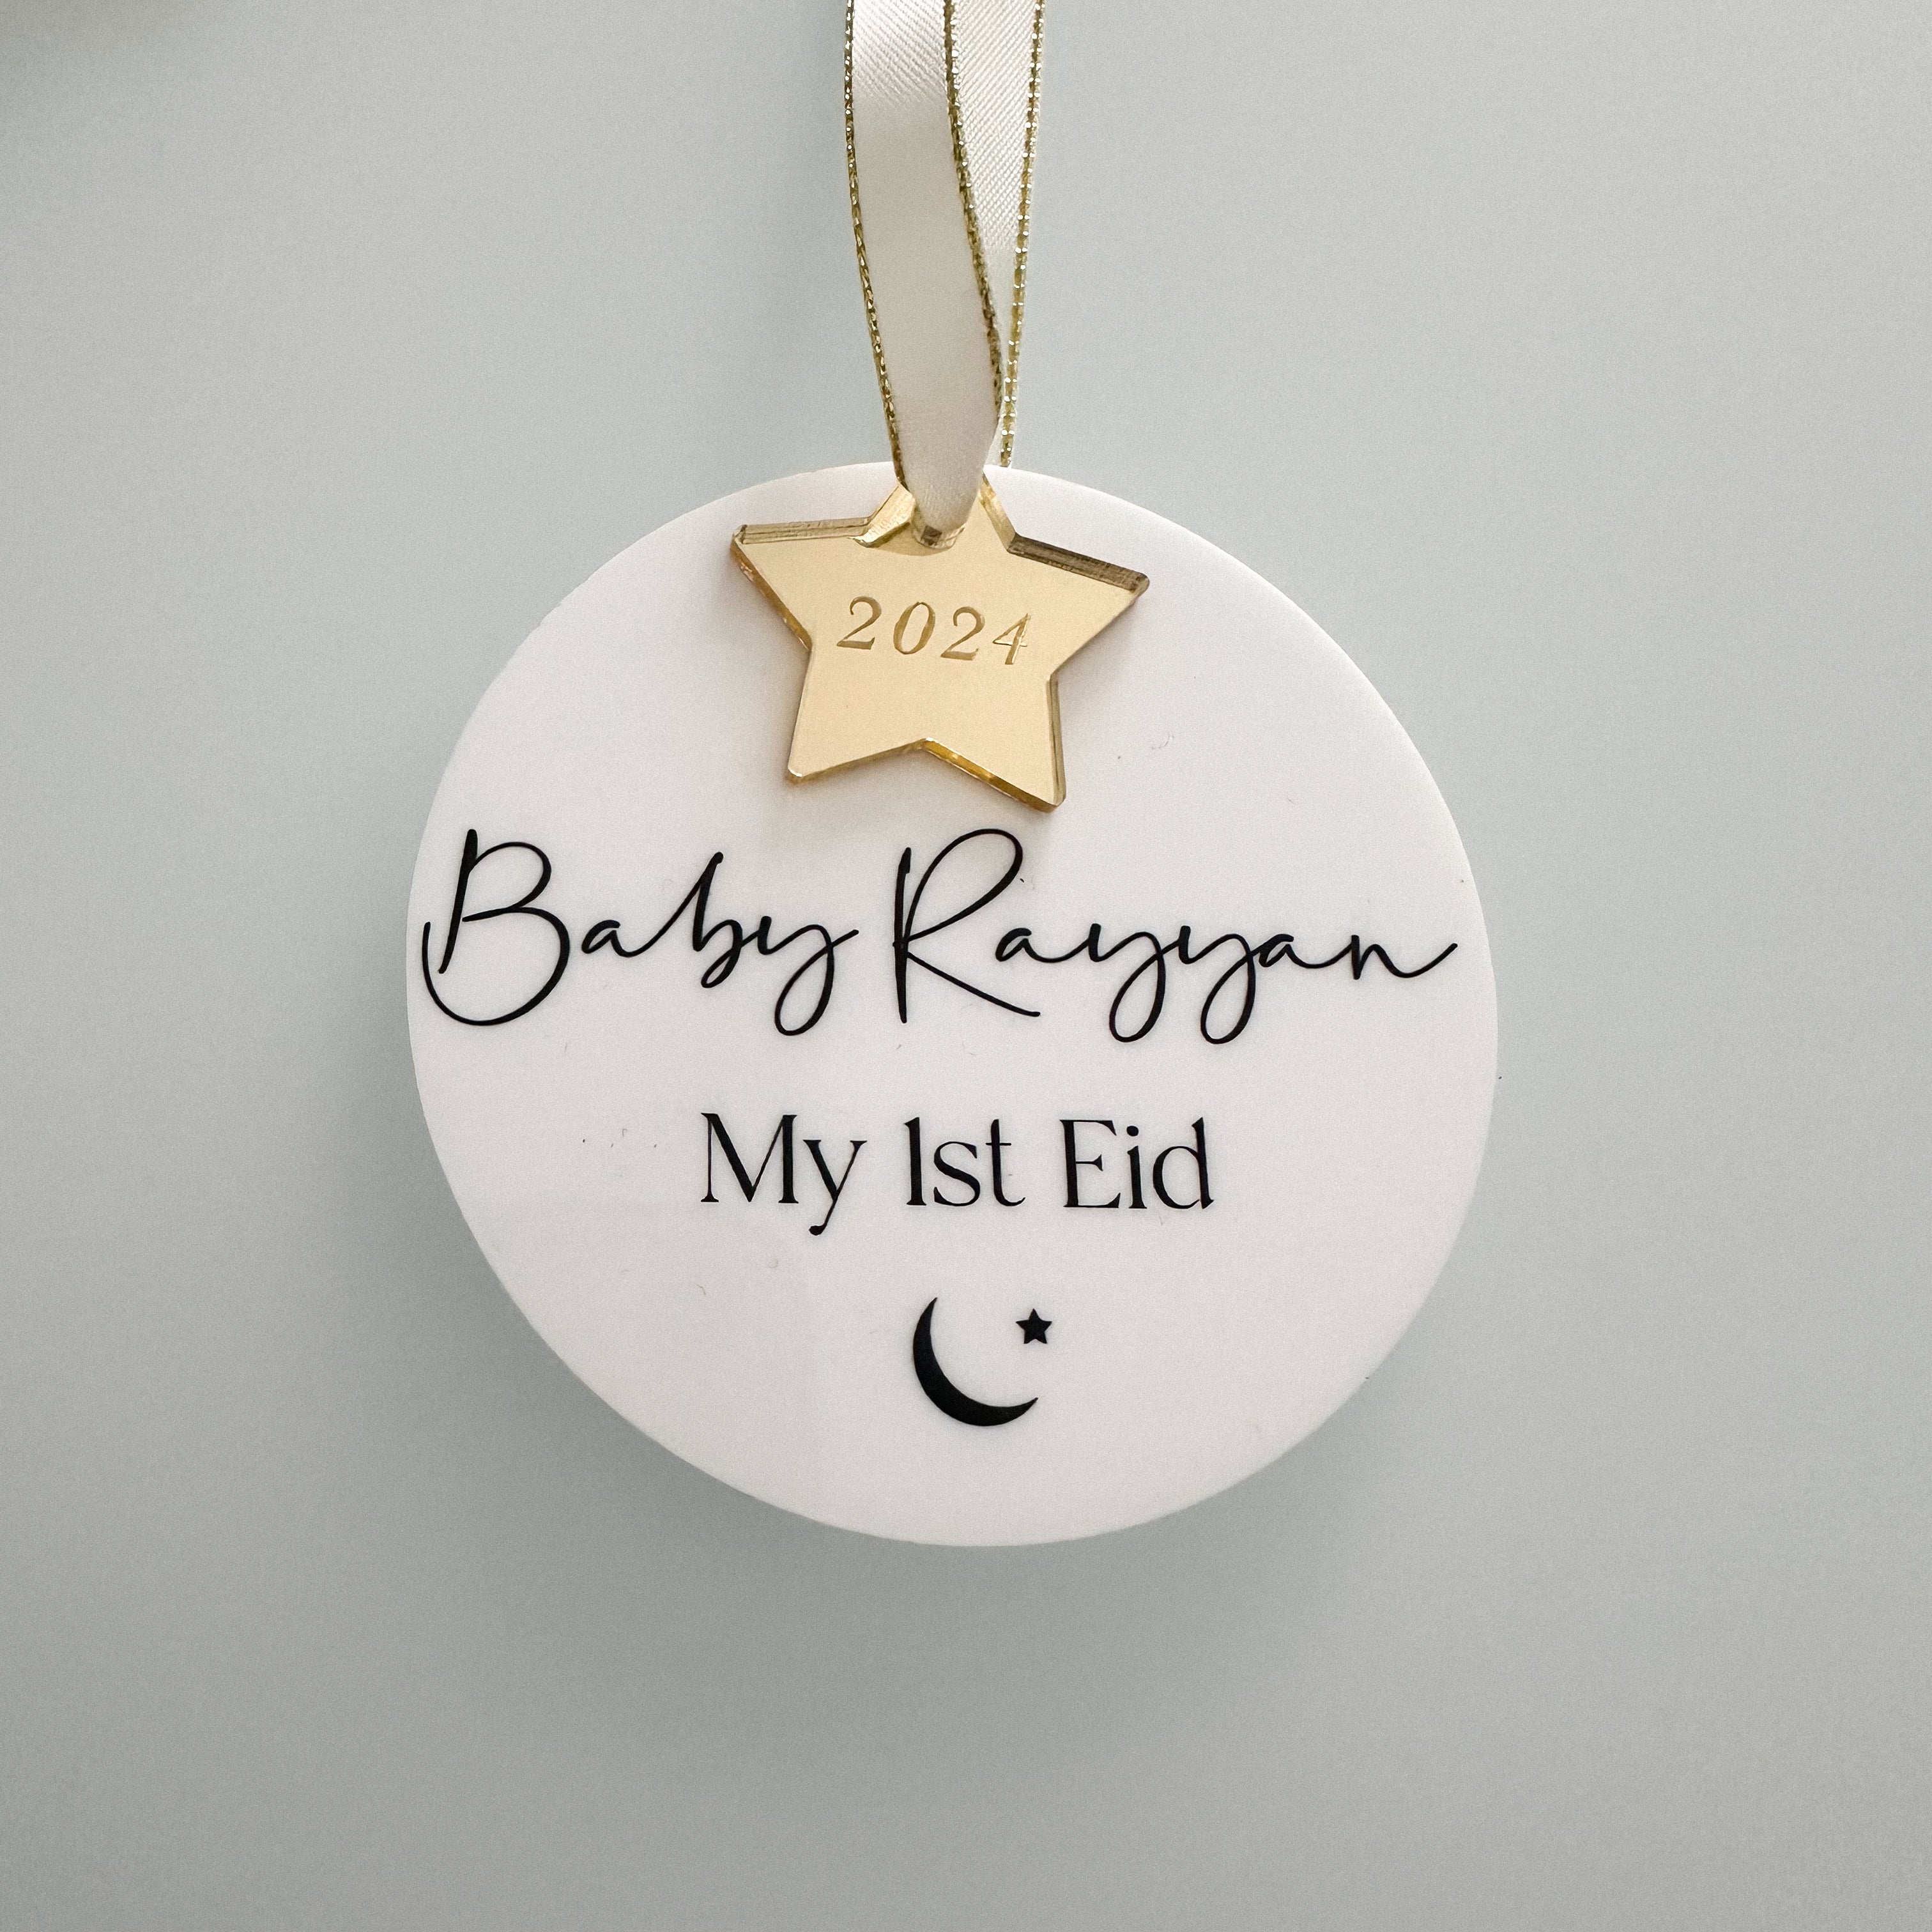 My 1st Eid Personalised Baby Keepsake